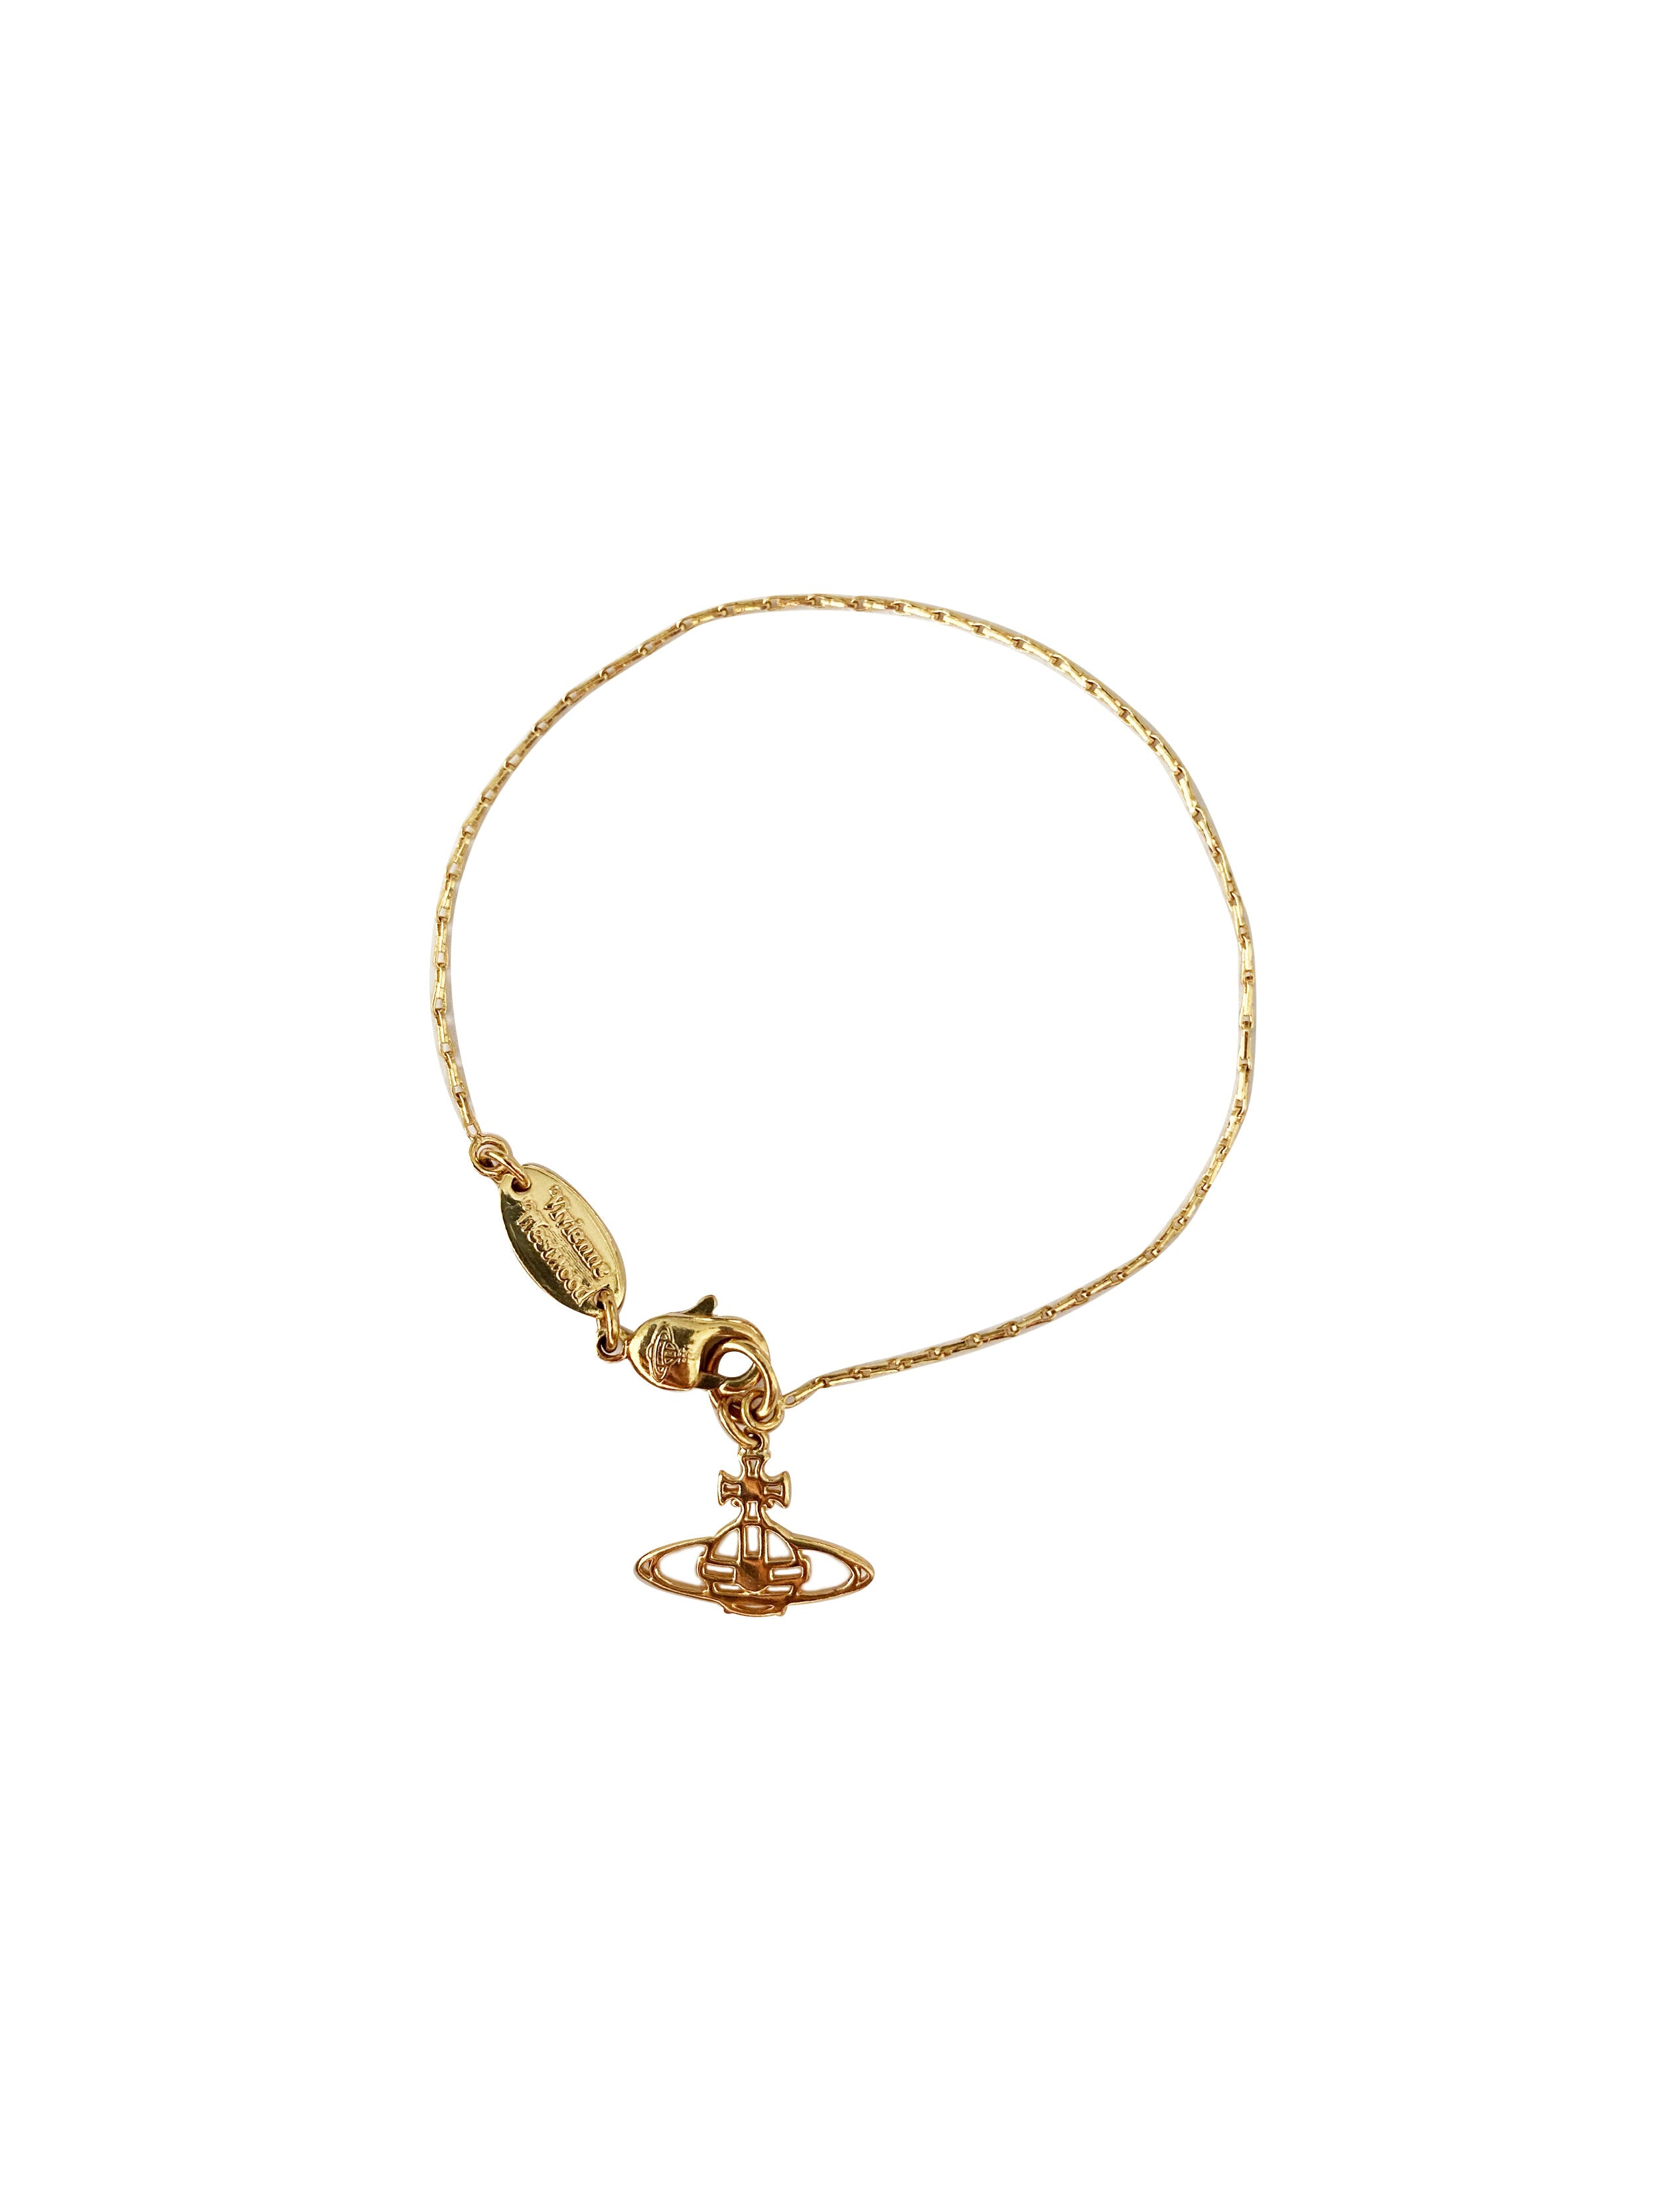 Vivienne Westwood 2000s Gold Mini Bracelet